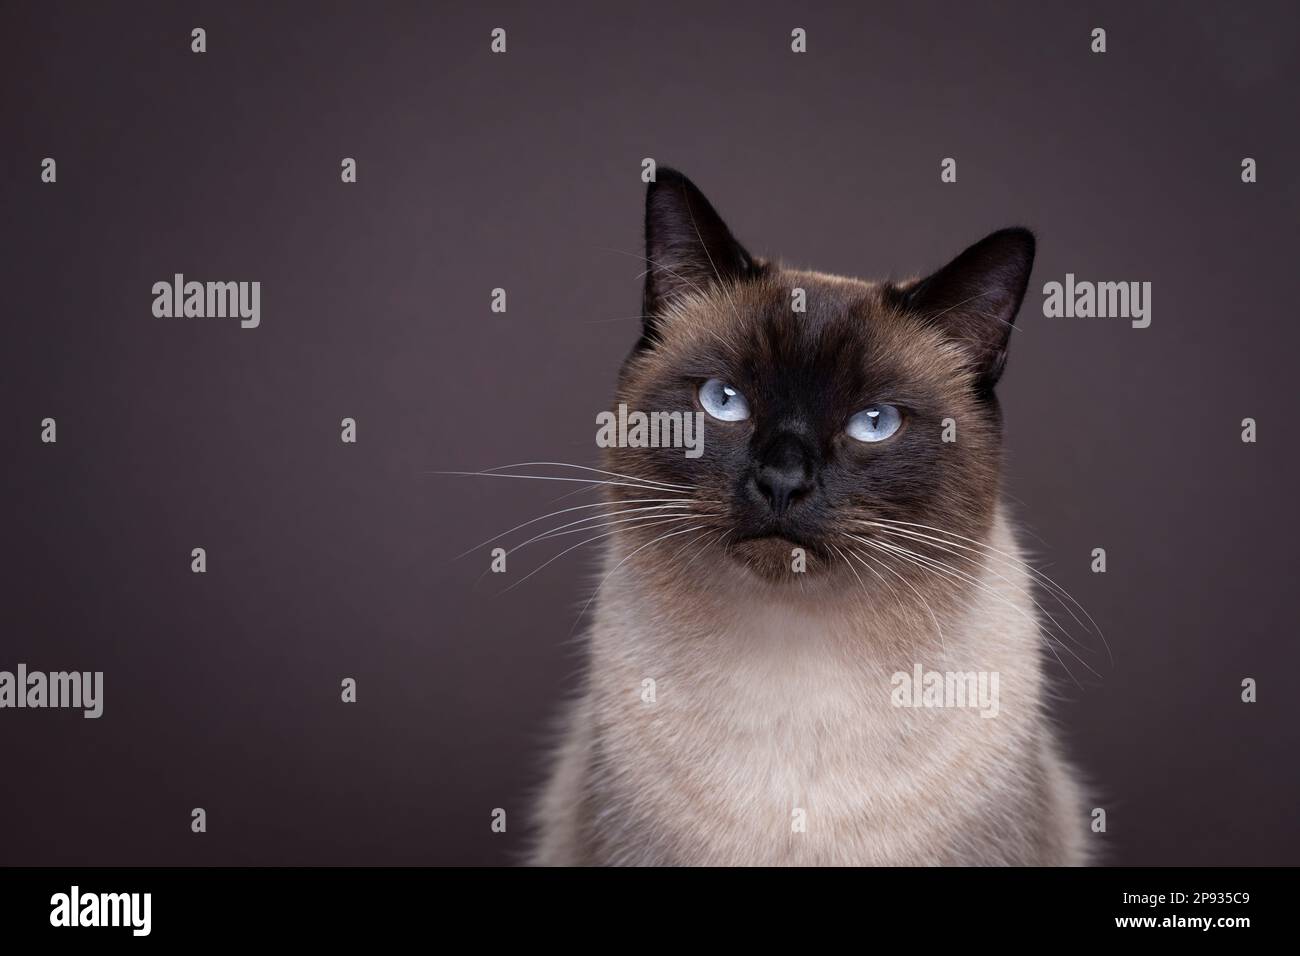 magnifique chat siamois avec des yeux bleus regardant l'appareil photo. portrait de studio sur fond marron foncé avec espace de copie Banque D'Images